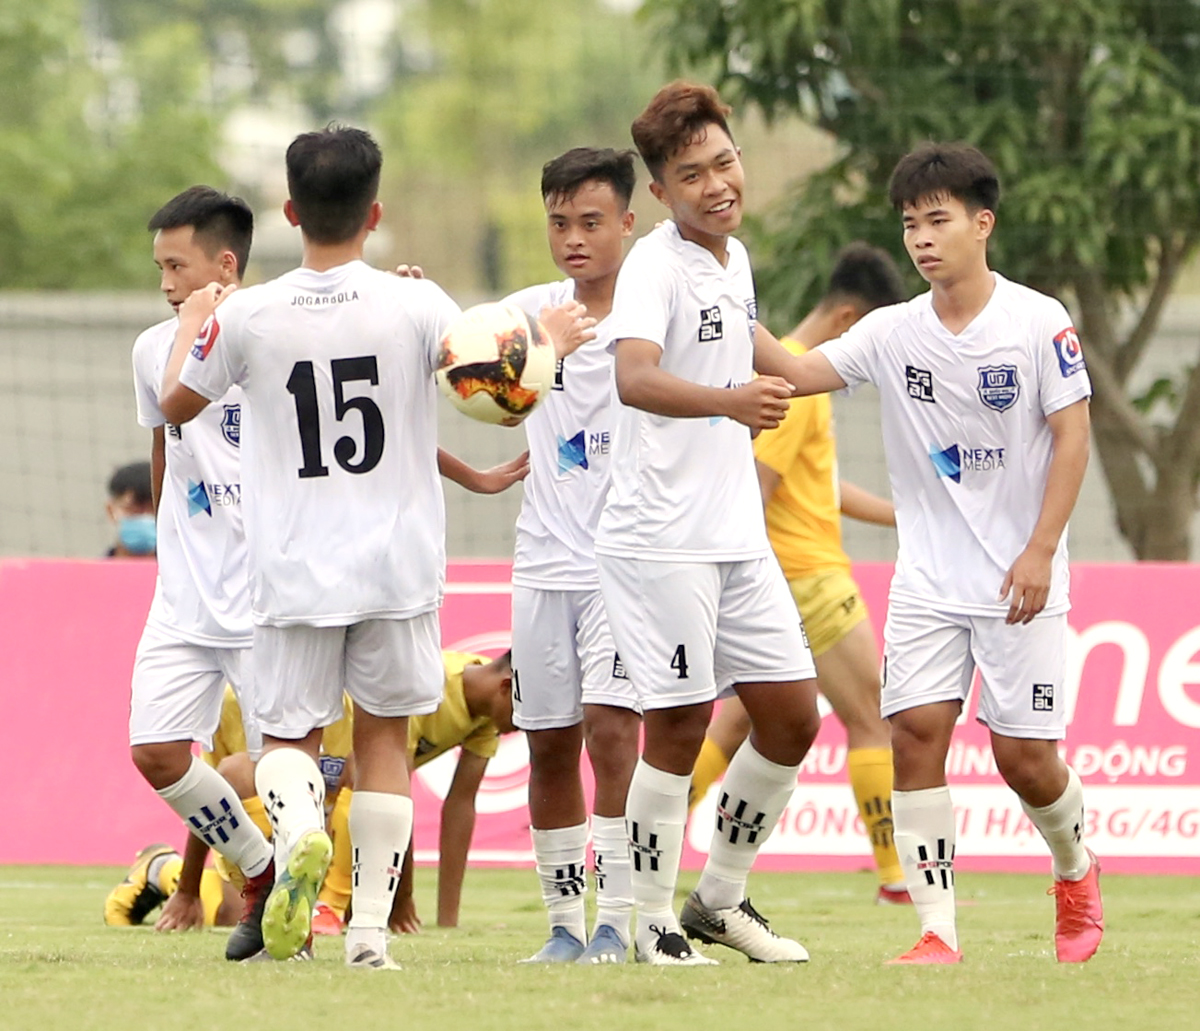 U17 Nutifood JMG (áo trắng) giành ngôi đầu bảng B VCK giải bóng đá Vô địch U17 Quốc gia - Next Media 2020